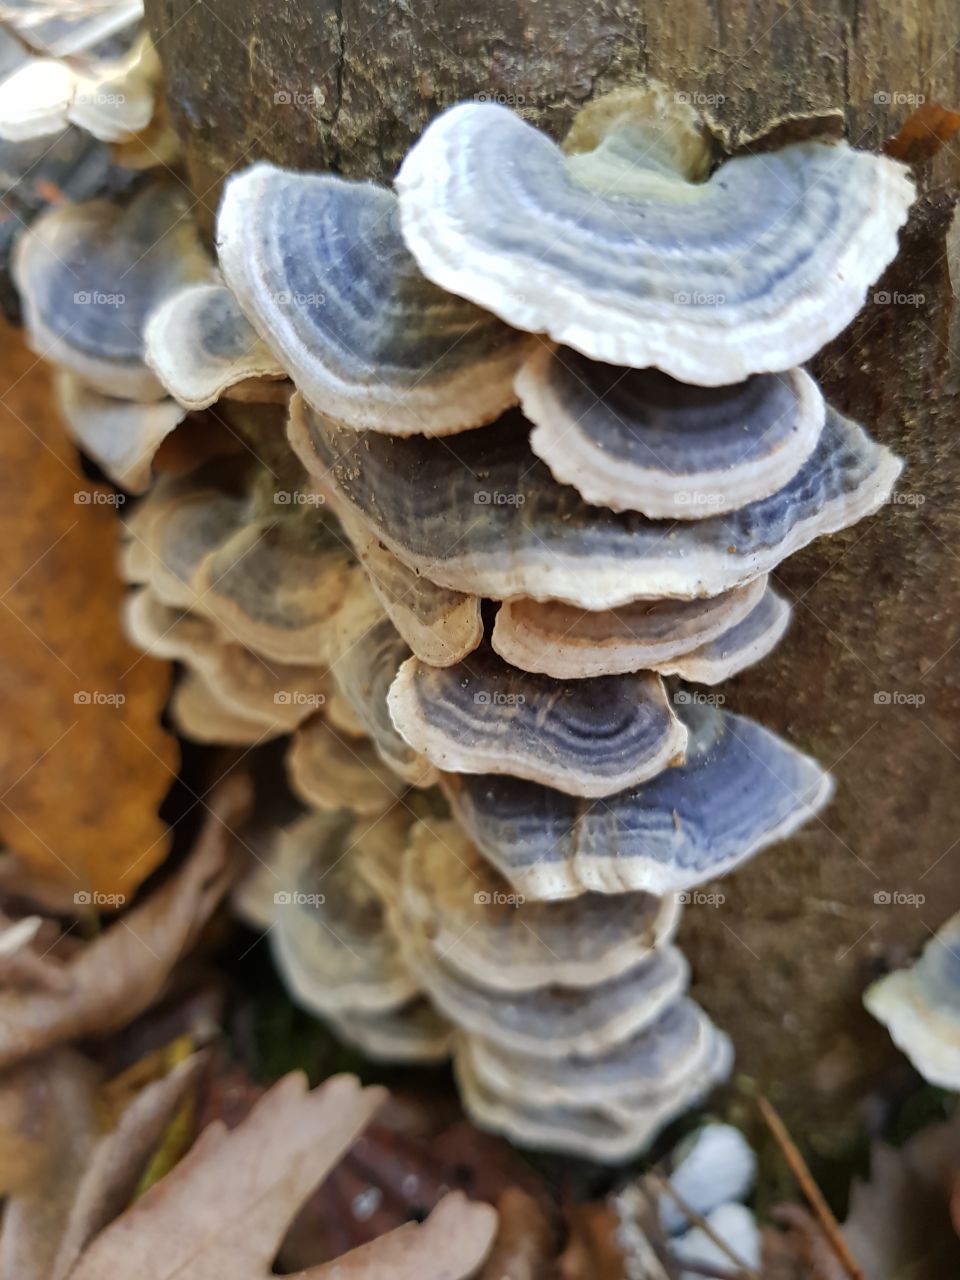 wooden mushrooms